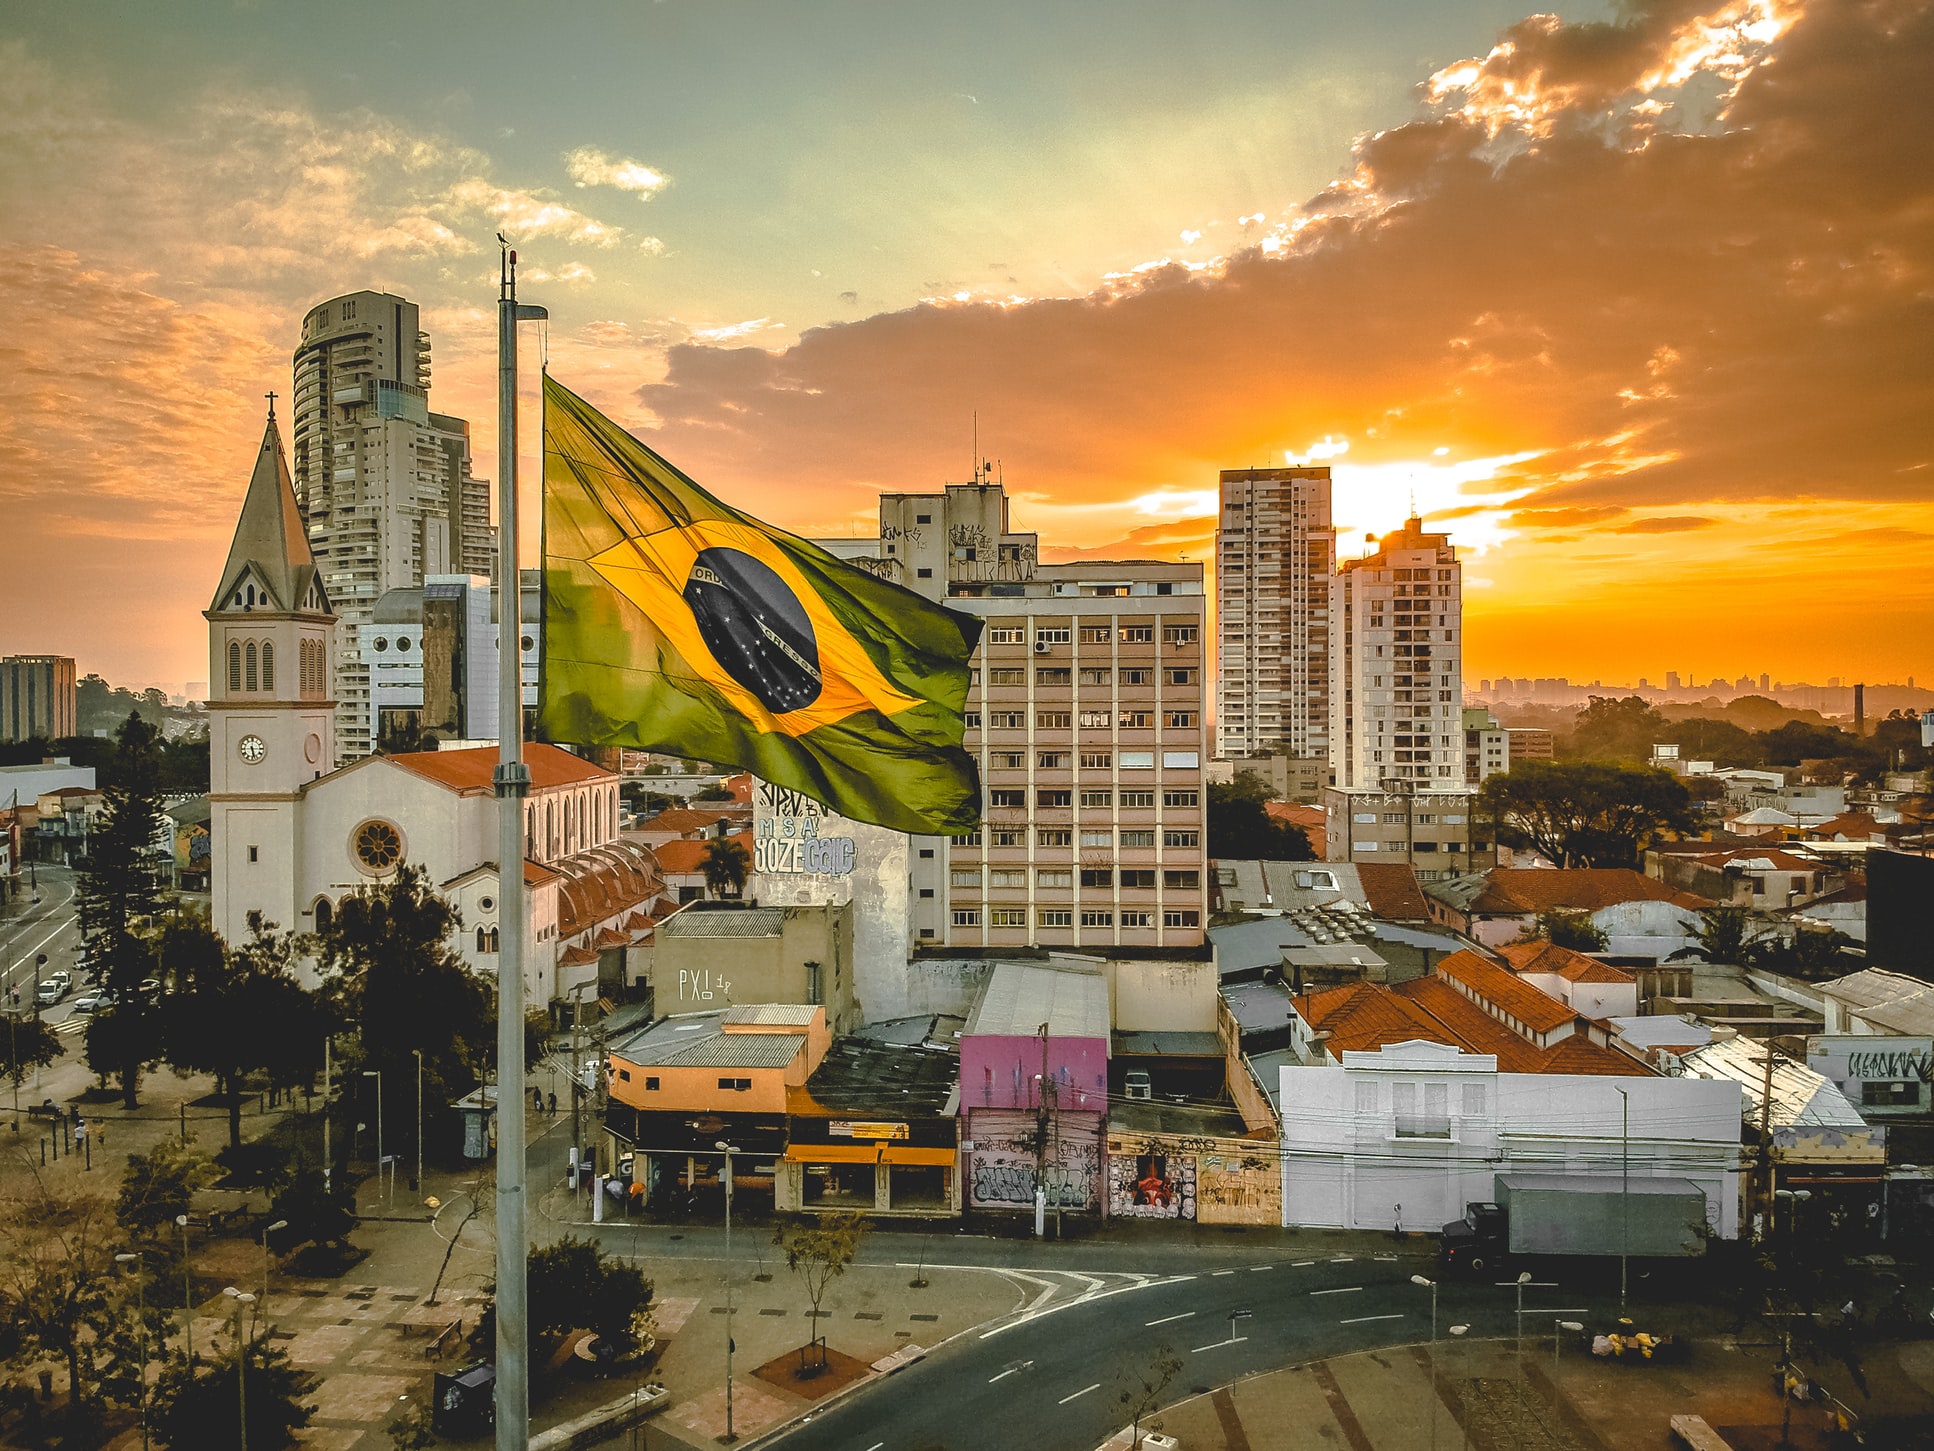 Das Bild zeigt Häuser einer Stadt, im Vordergrund weht die brasilianische Flagge